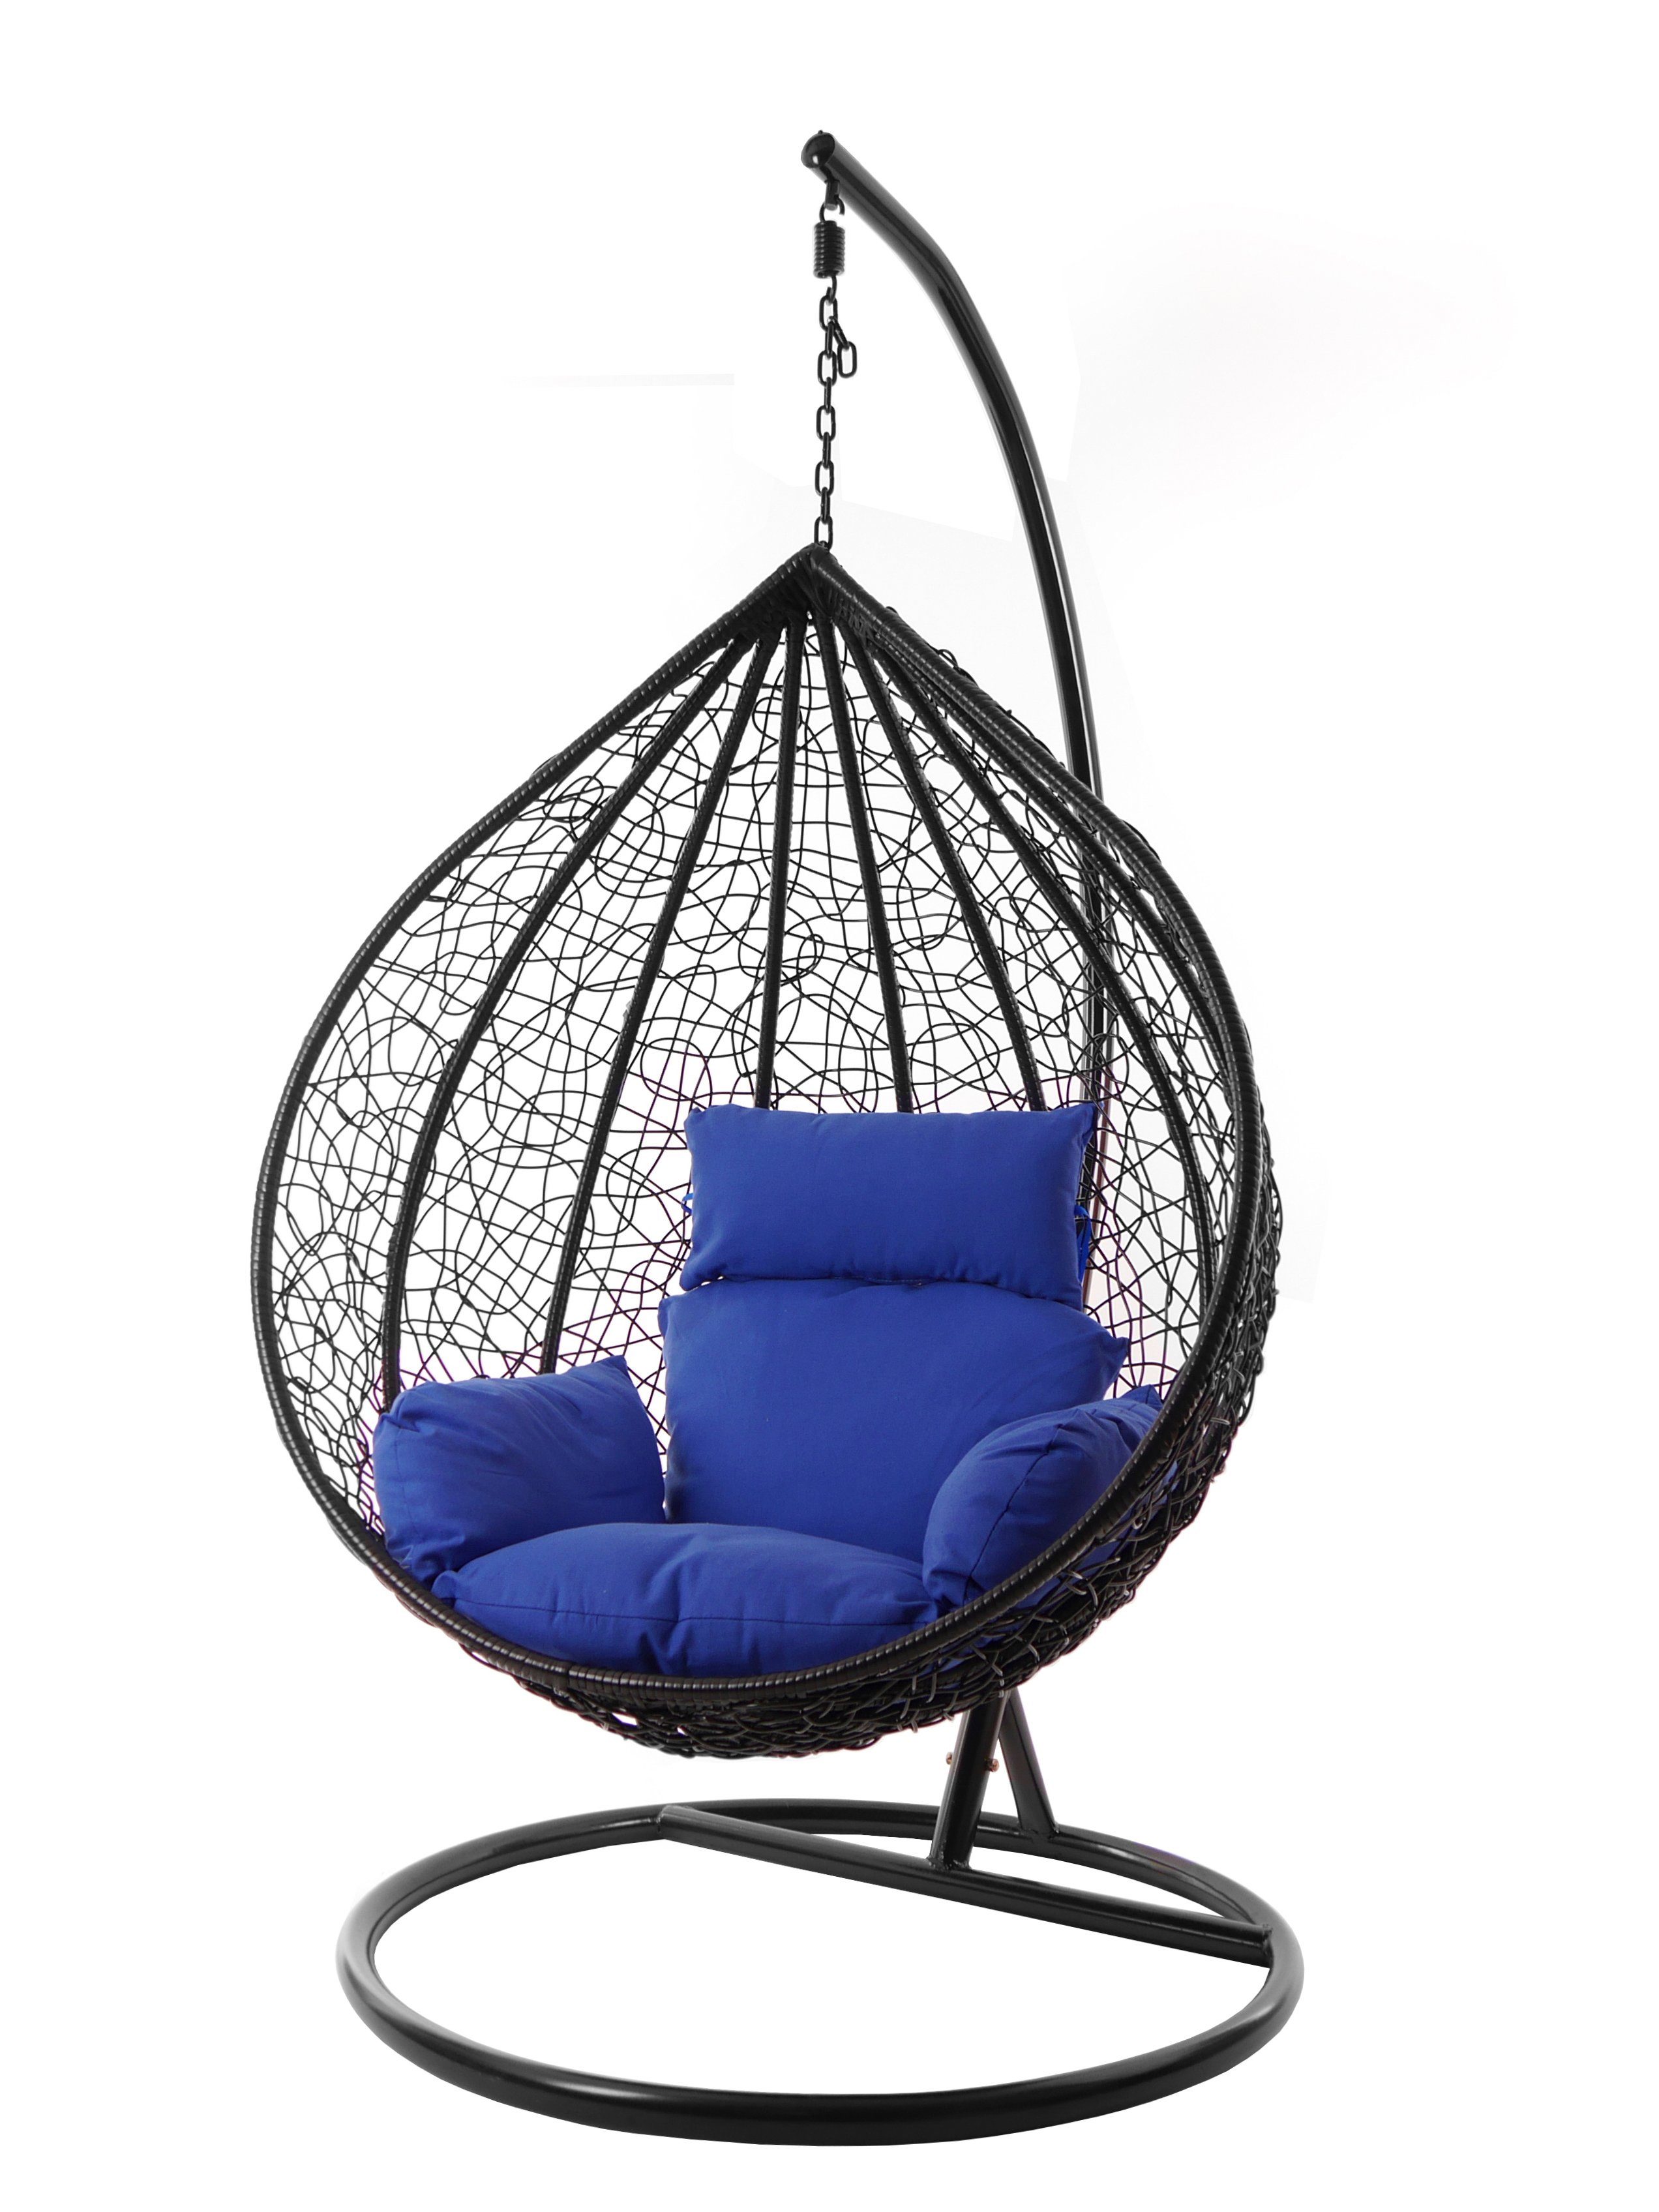 KIDEO Hängesessel Hängesessel MANACOR schwarz, inklusive, verschiedene und edel, (5900 Swing Gestell Kissen XXL Chair, Nest-Kissen, admiral) blau Farben